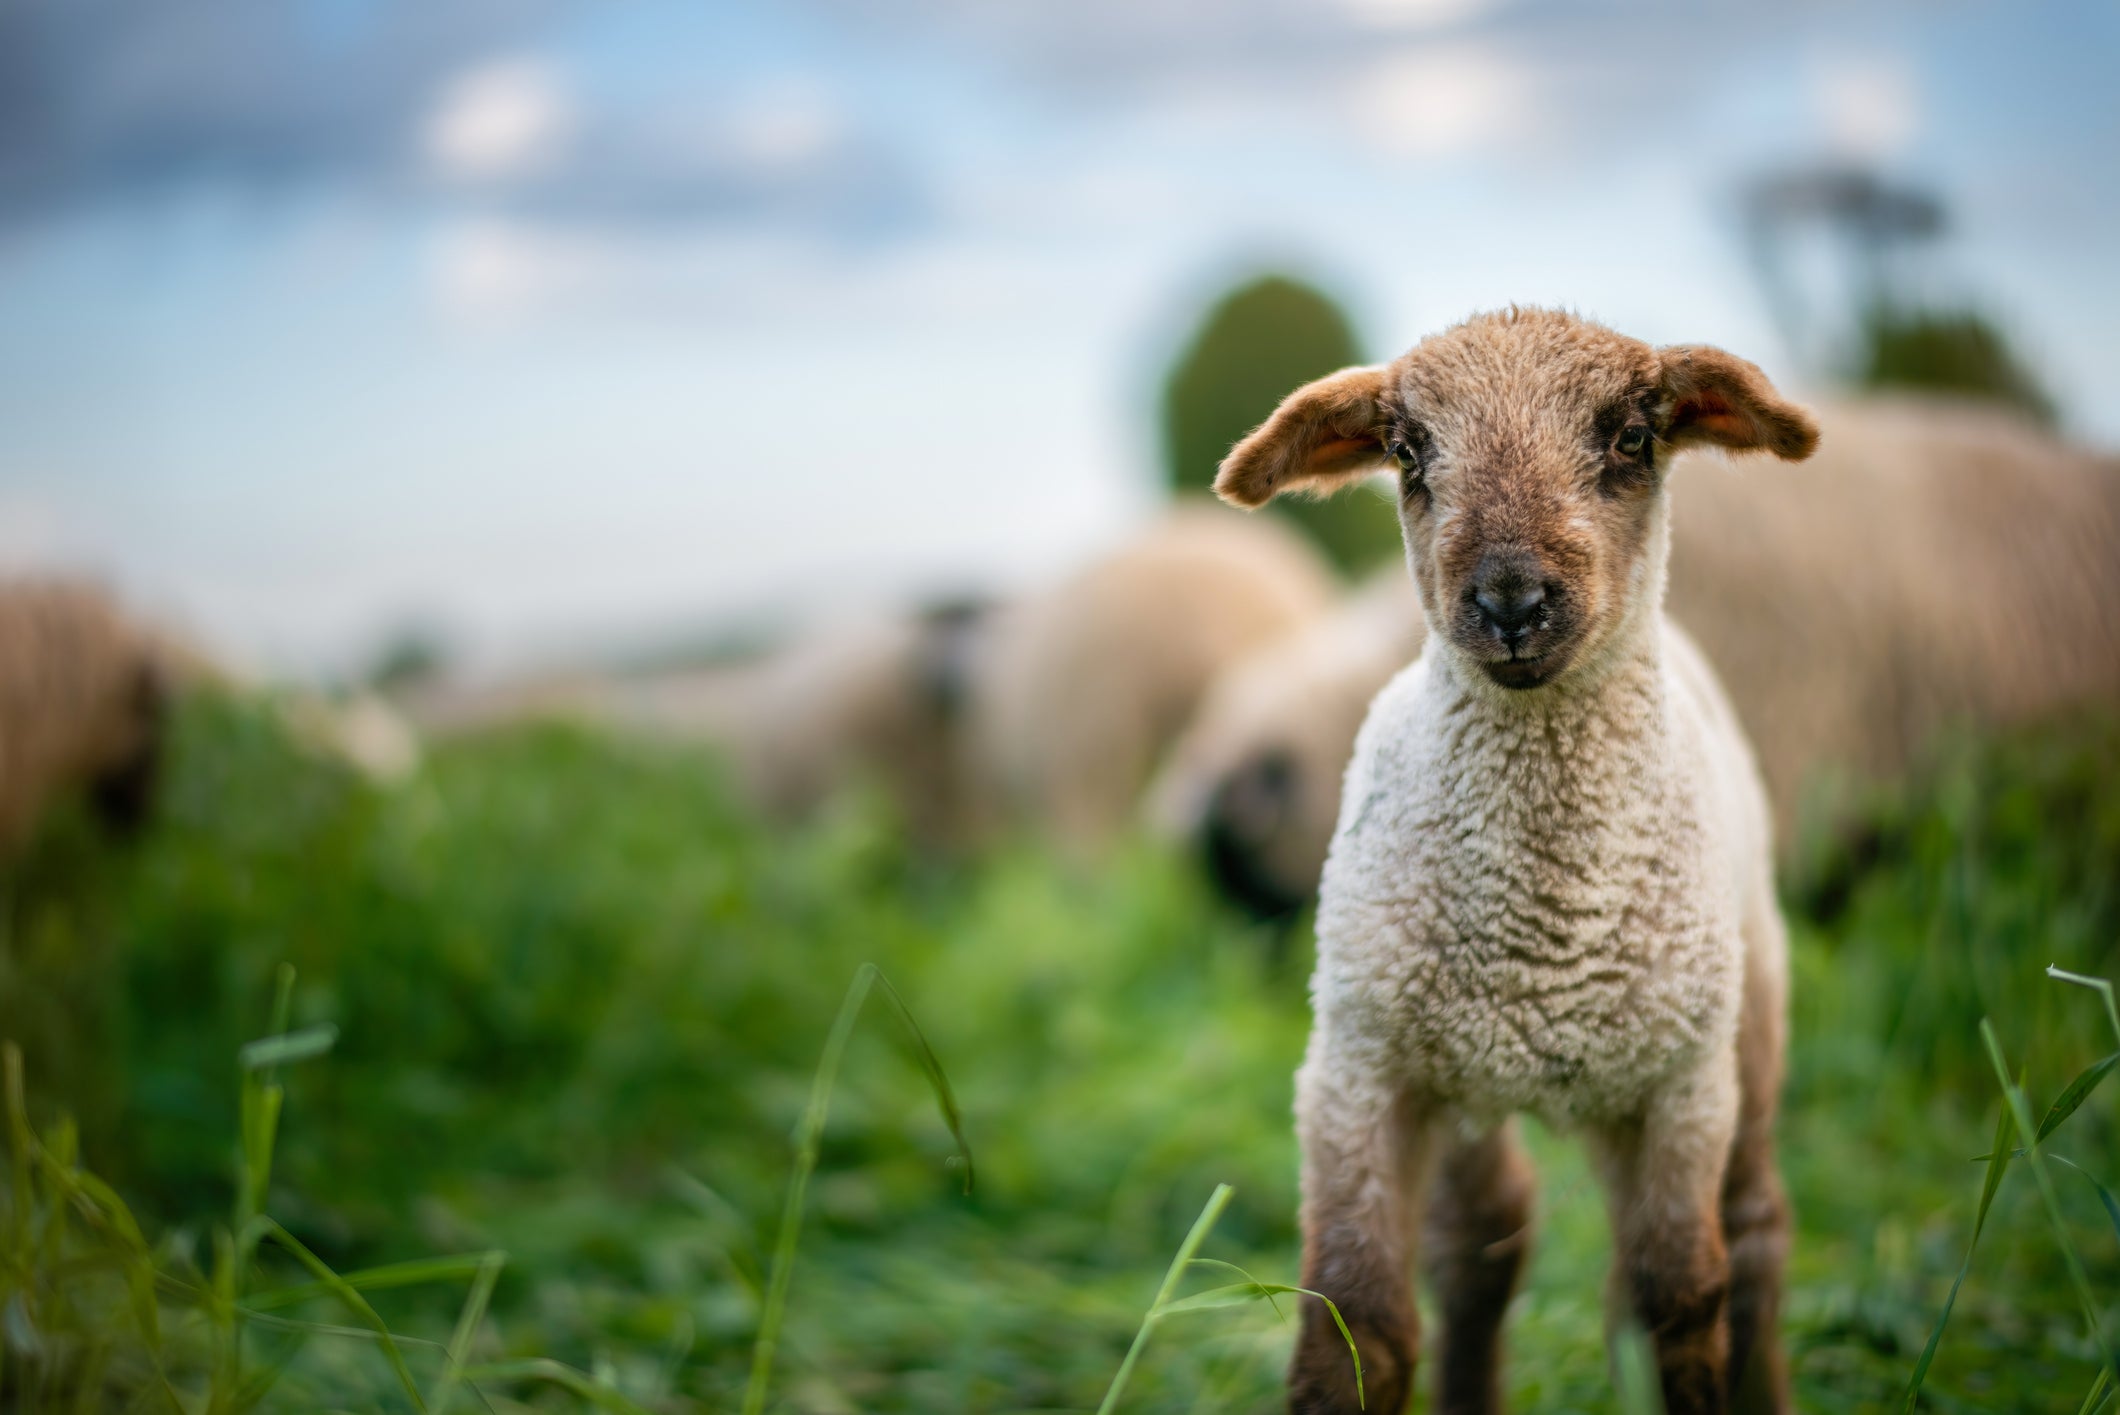 Sheep lamb in a field